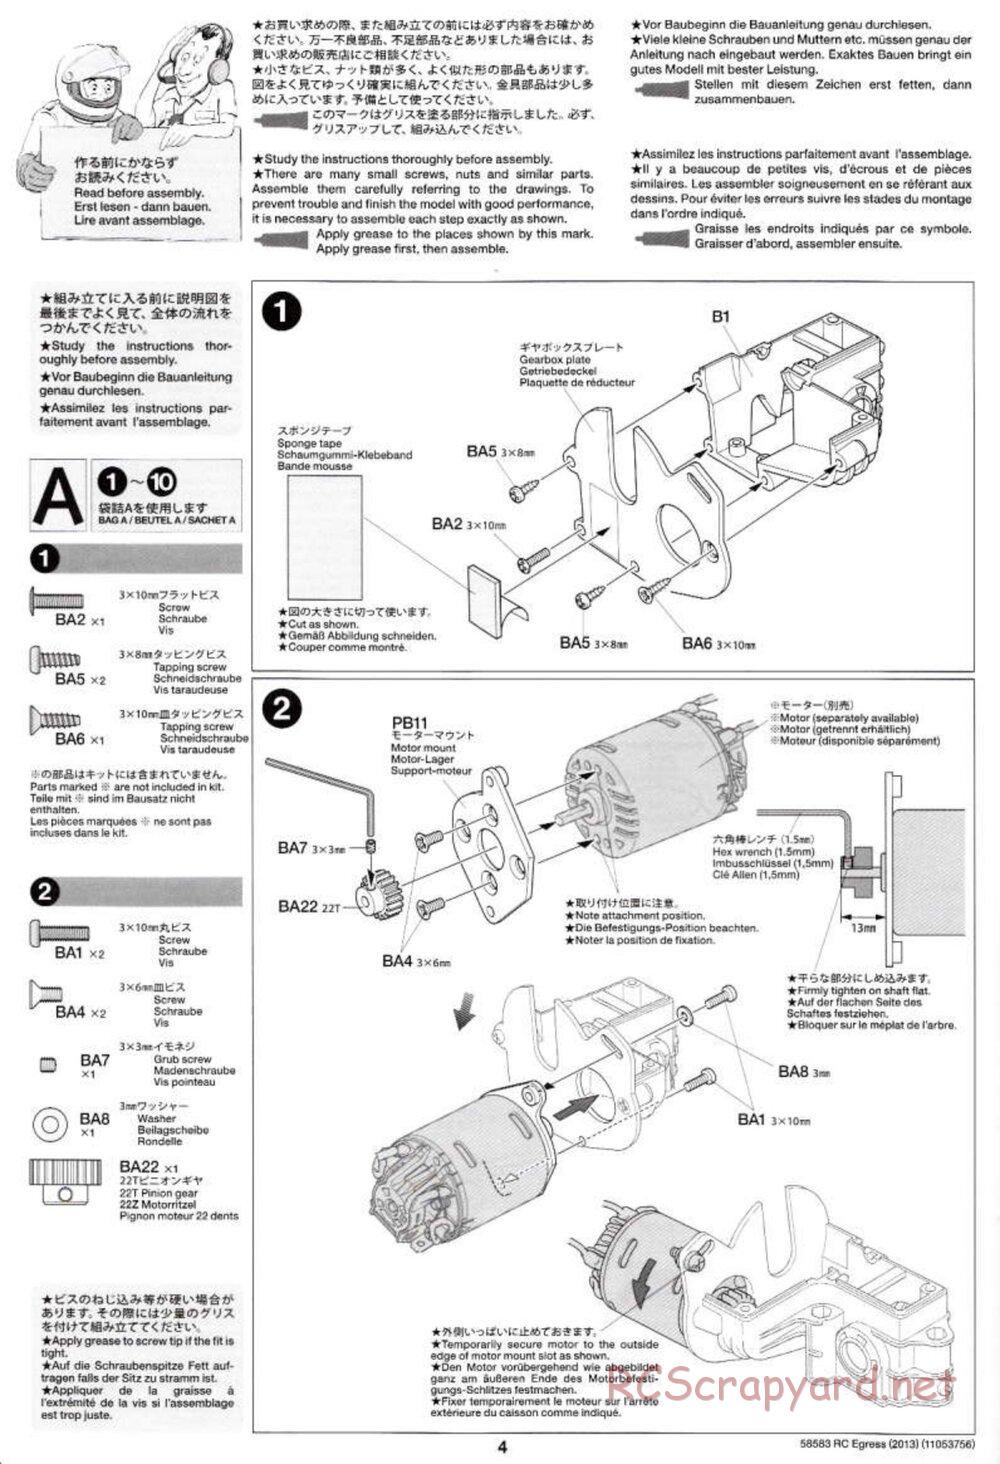 Tamiya - Egress 2013 - AV Chassis - Manual - Page 4